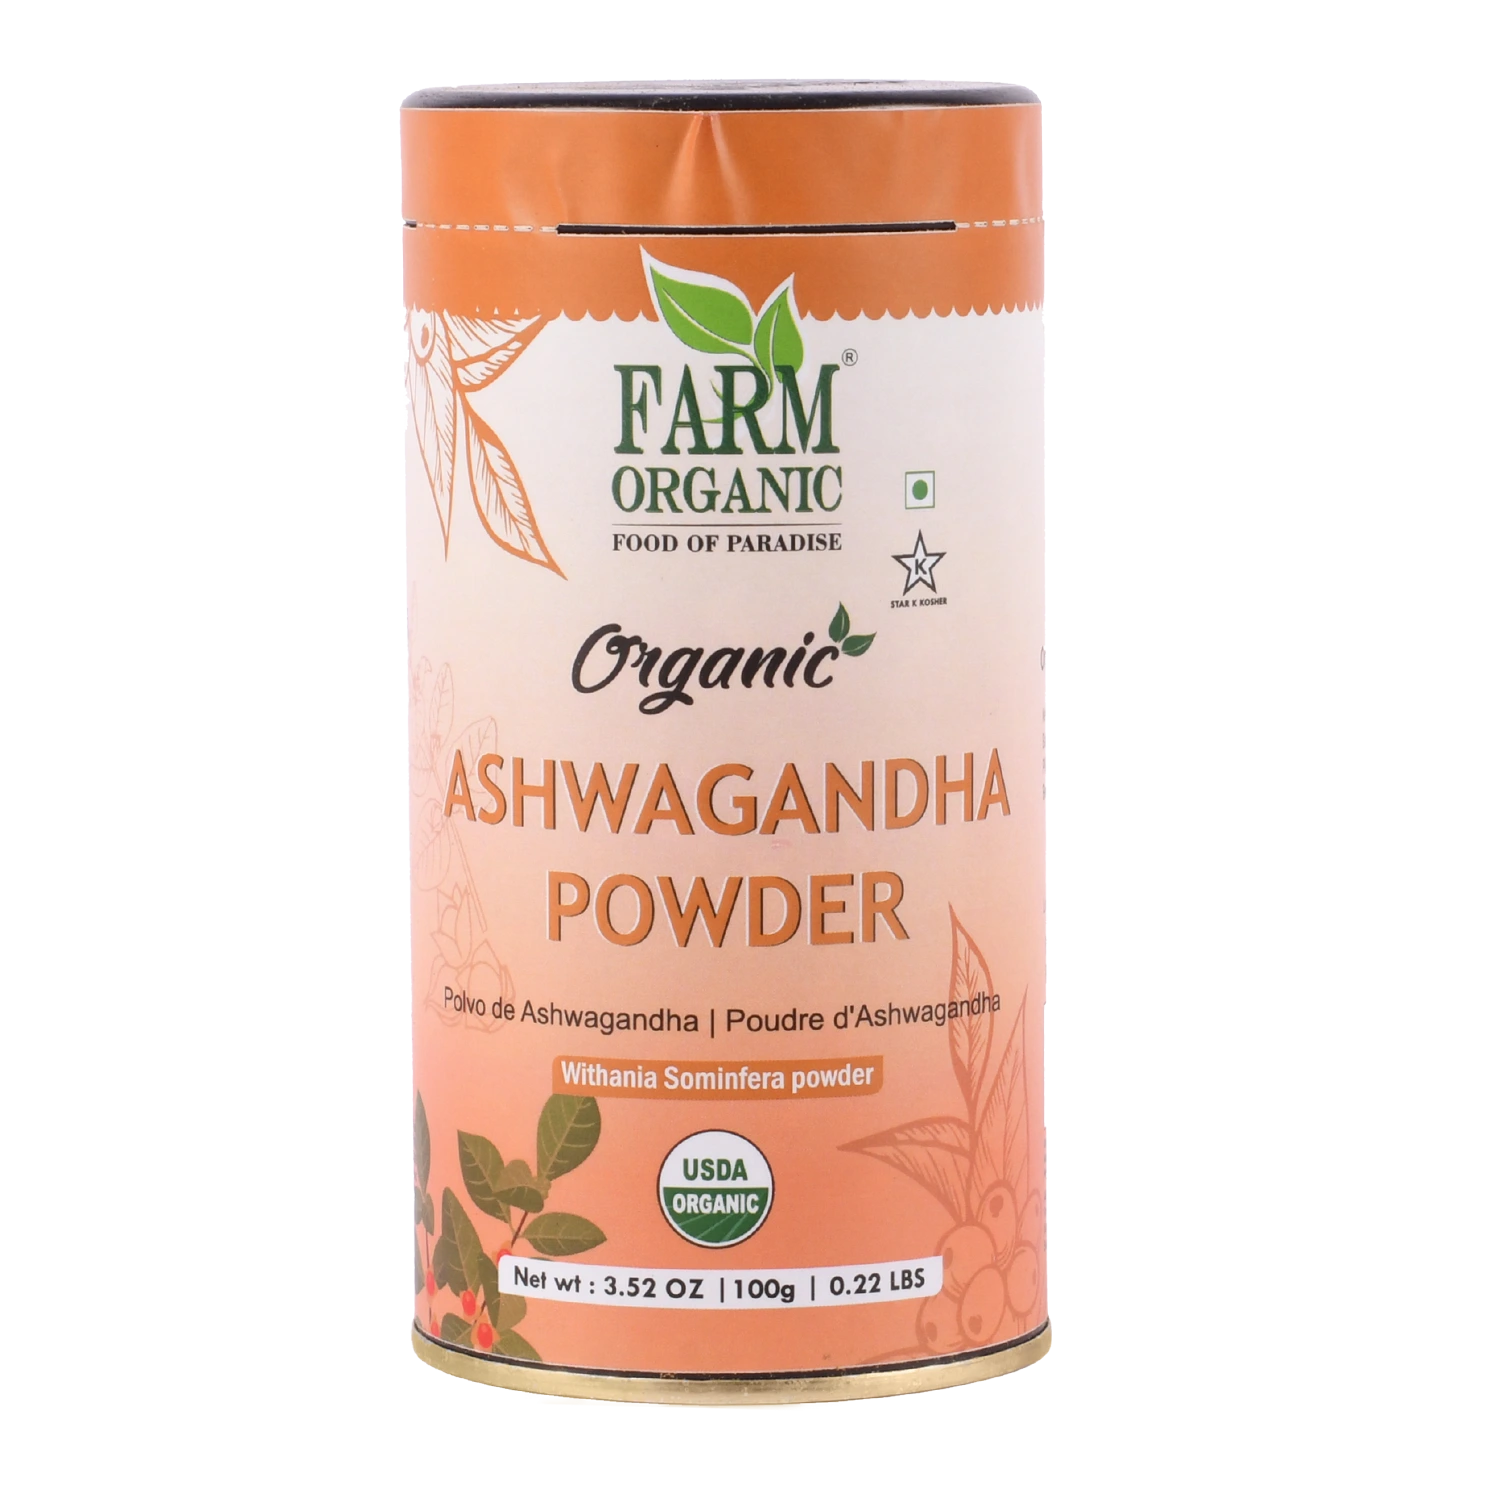 Organic Ashwagandha Powder – 100% USDA Certified Organic